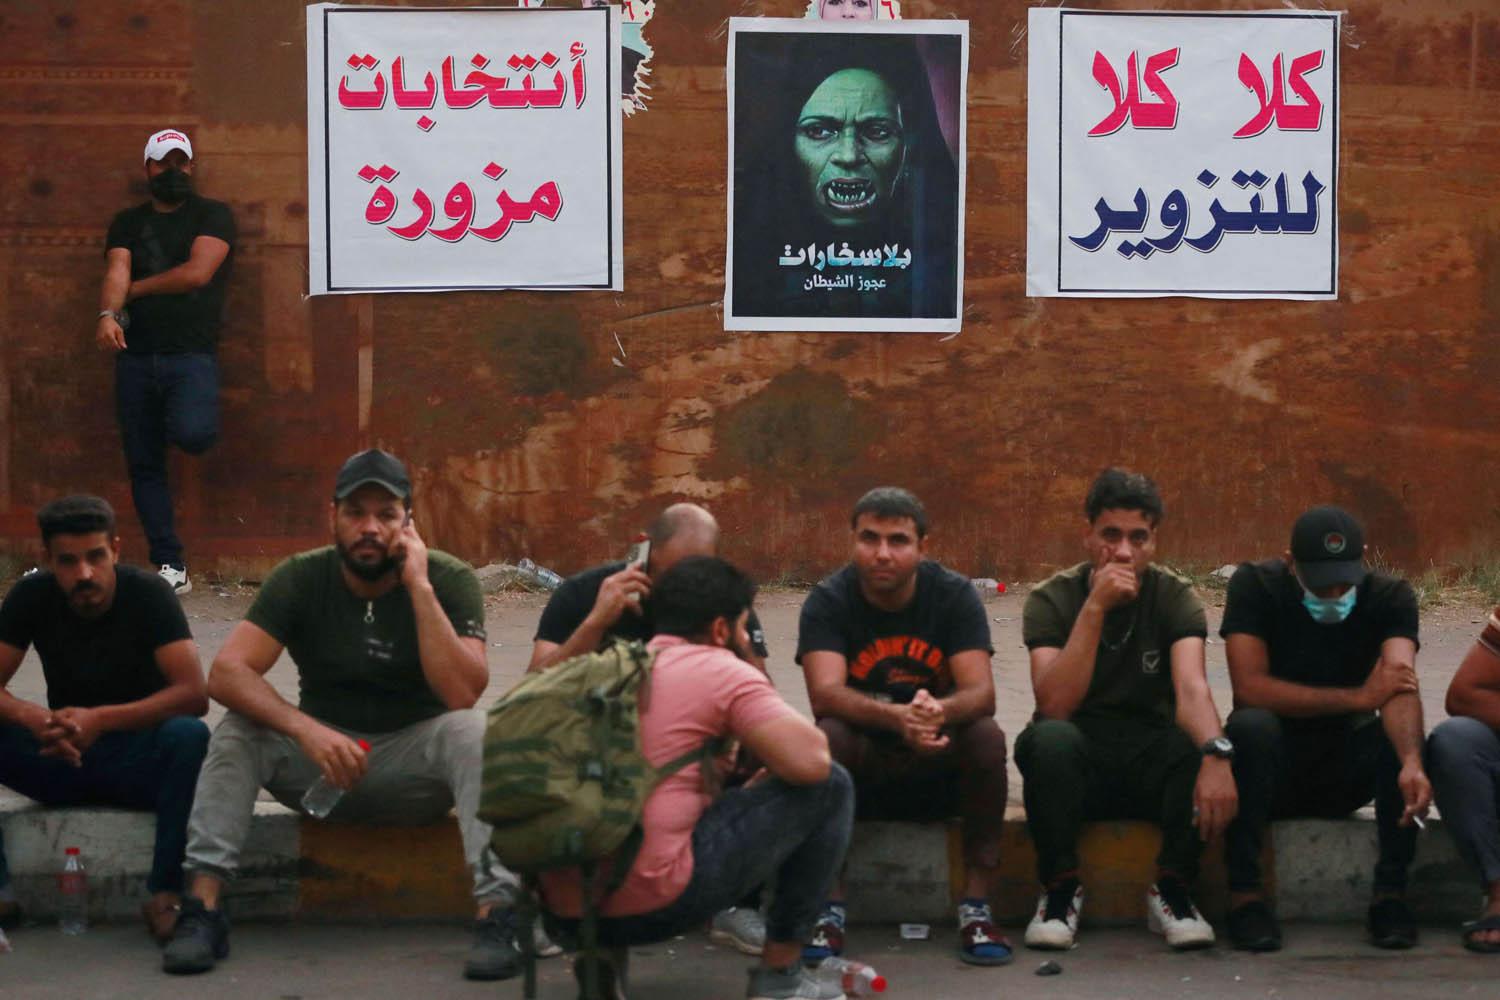 مقاتلون من الحشد الشعبي يتجمعون للتظاهر ضد نتائج الانتخابات العراقية